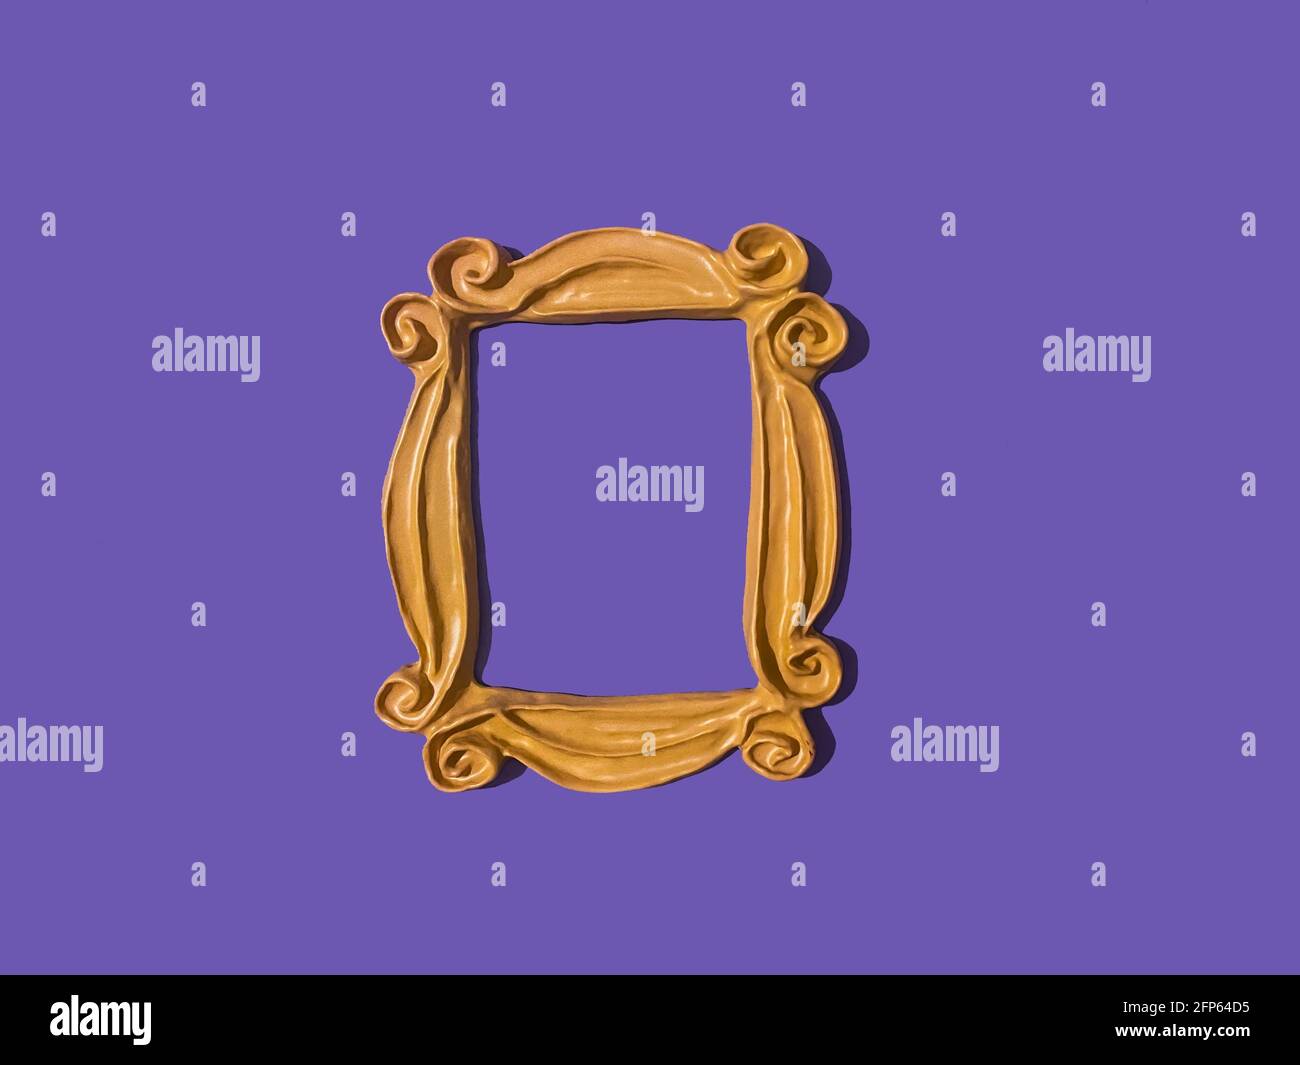 Cadre jaune de l'émission DE télévision D'AMIS qui a été utilisé autour du peephole de Monica sur la porte. Mur violet. Cadre photo. Cadre de l'émission de télévision AMIS Banque D'Images